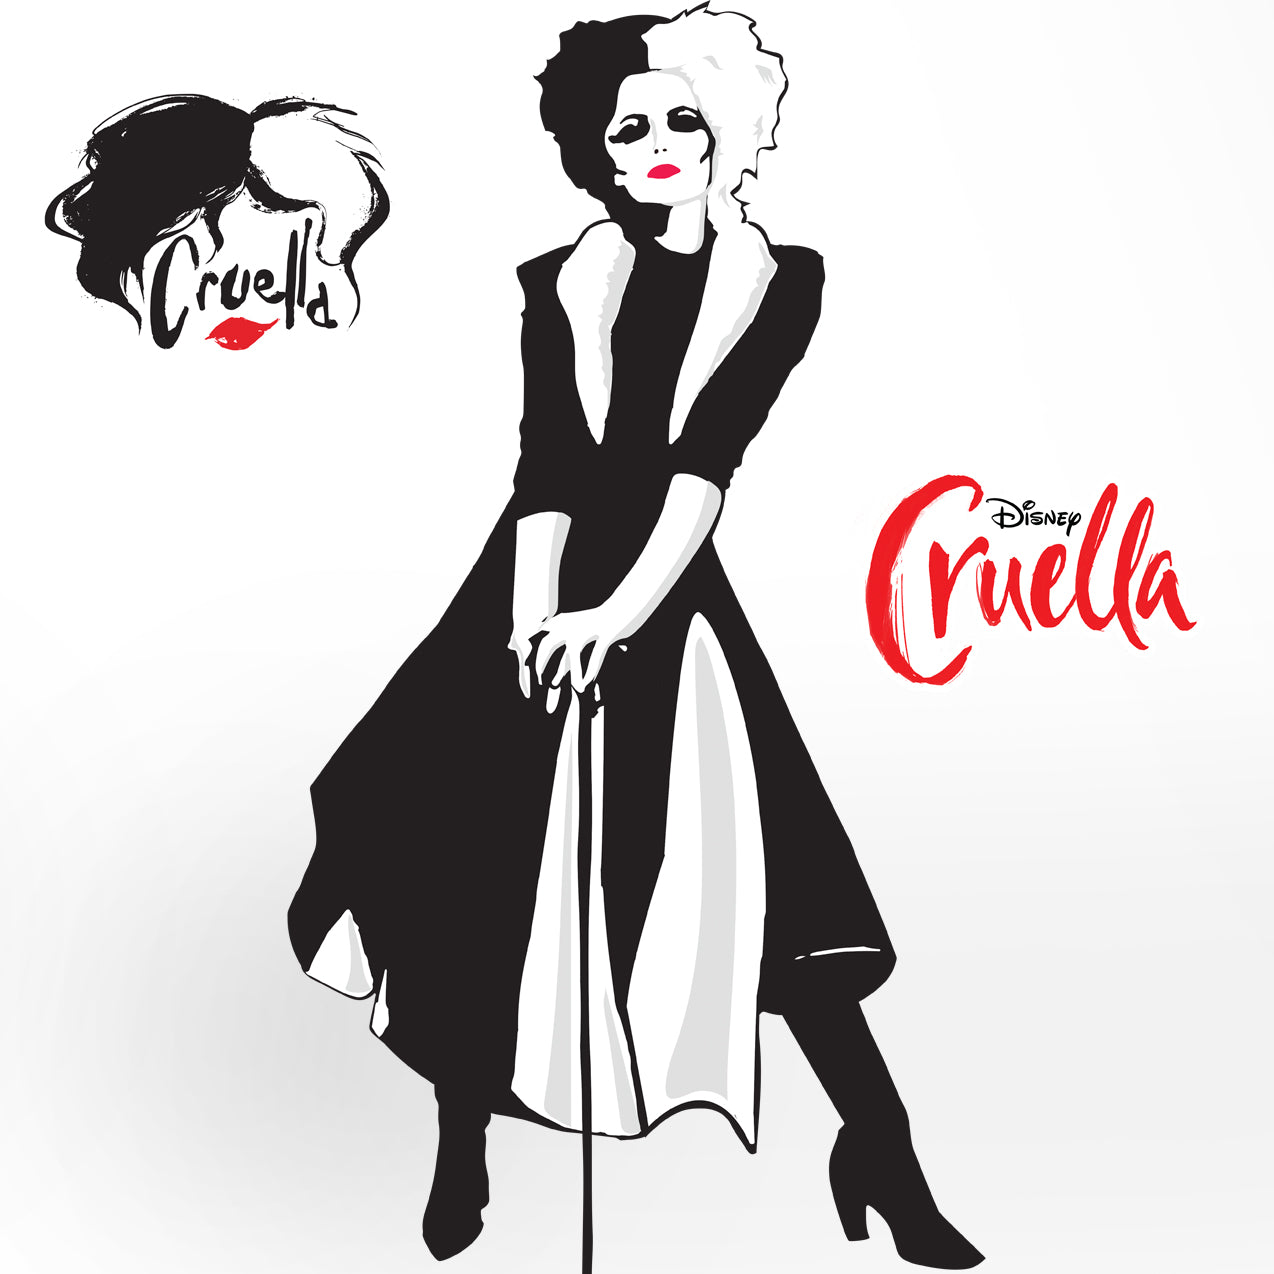 Cruella De Vil Wallpapers